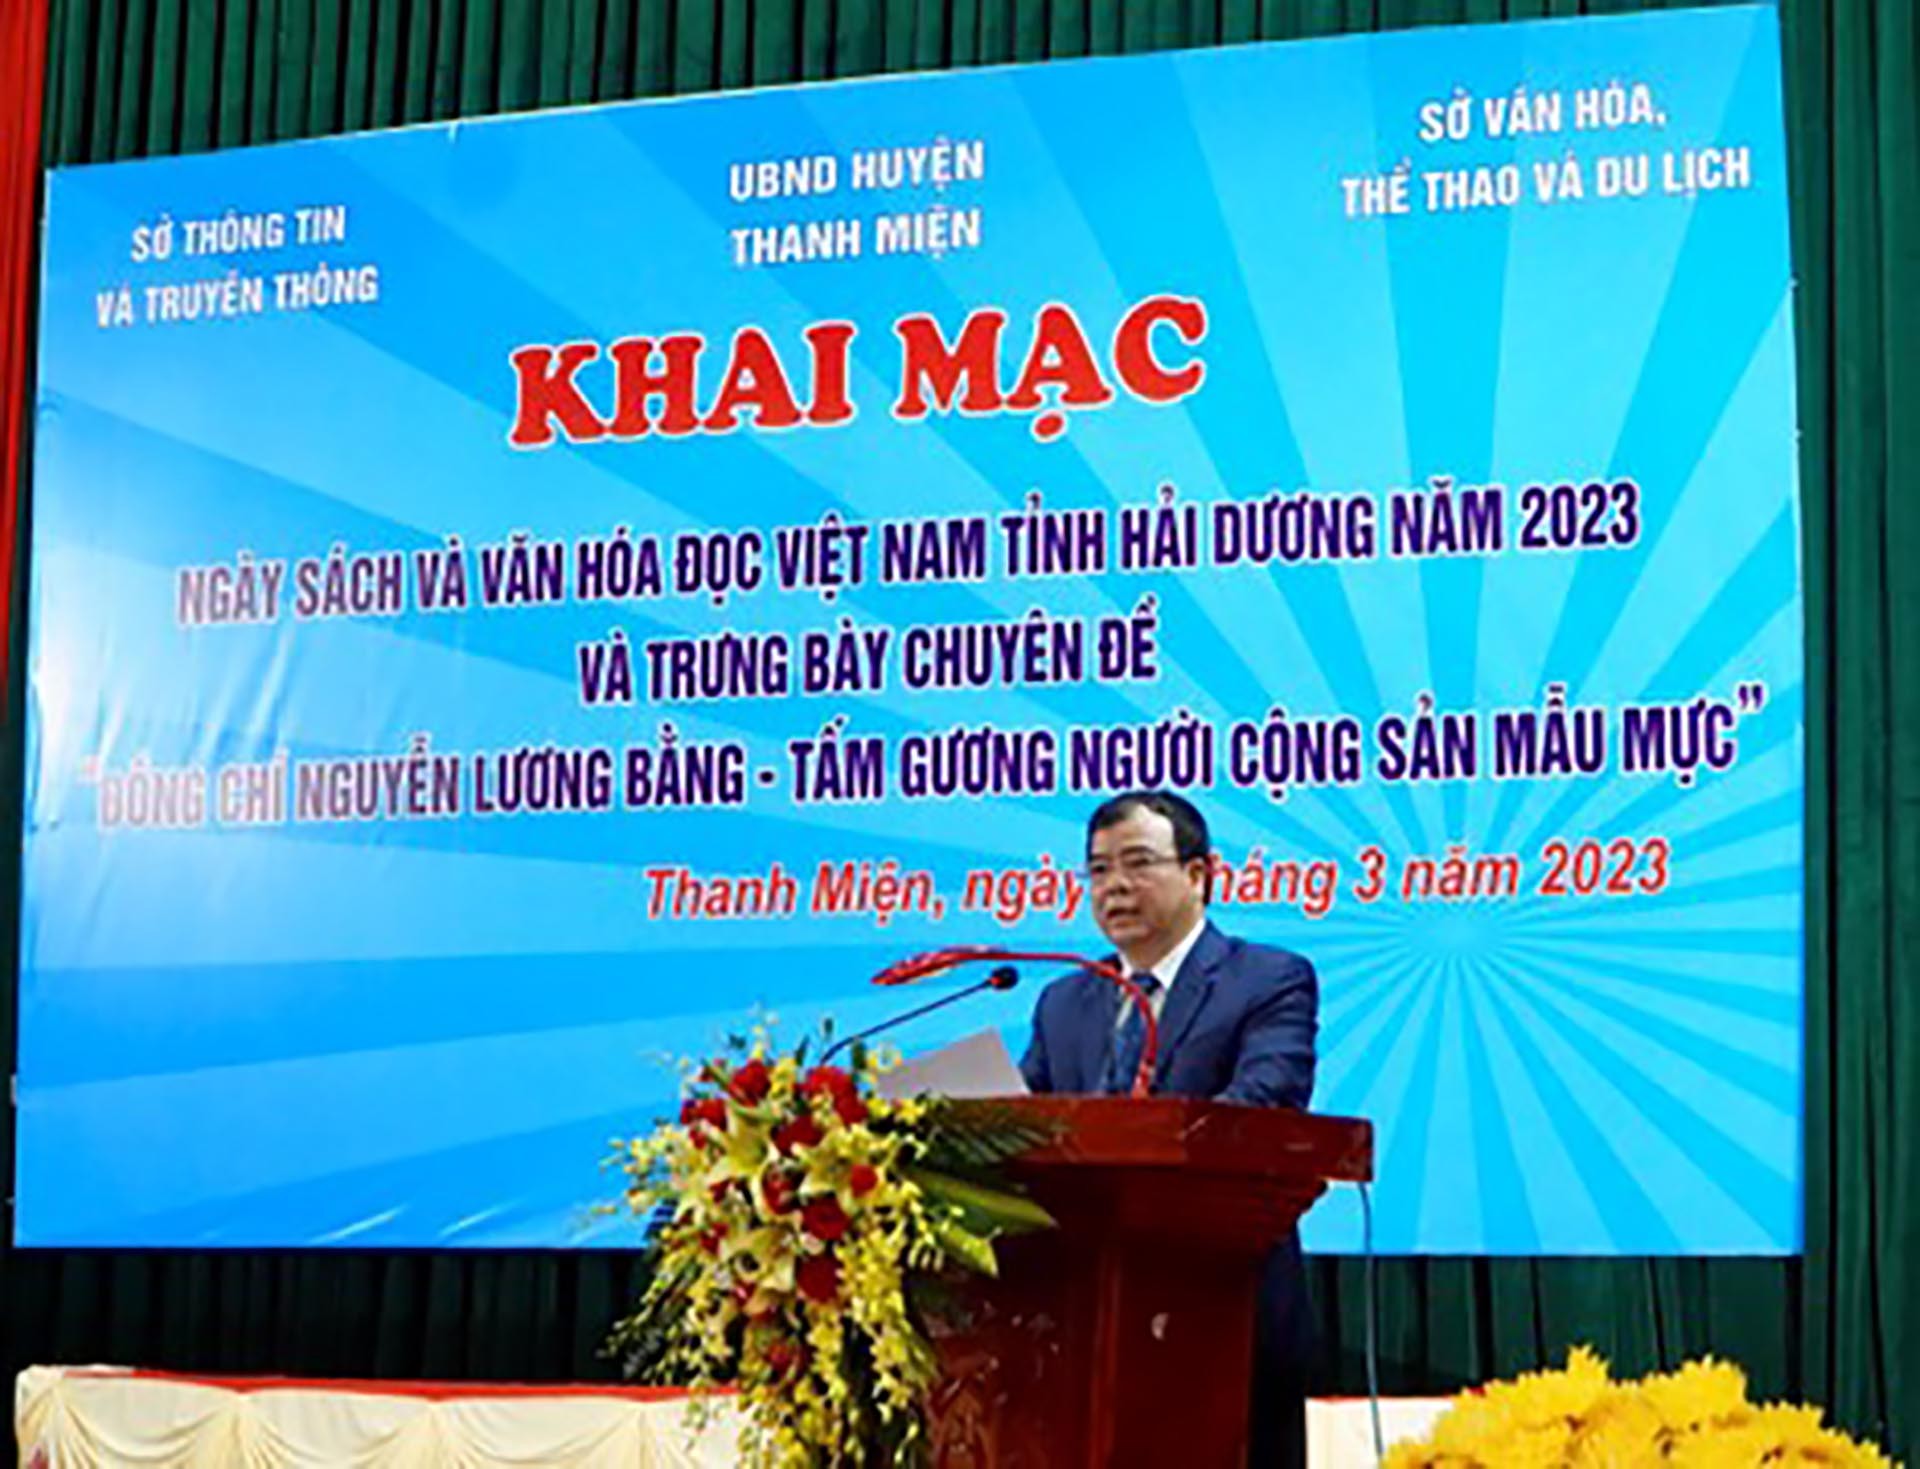 Đồng chí Nguyễn Minh Hùng- Phó Chủ tịch UBND tỉnh Hải Dương, trưởng Ban chỉ đạo Ngày sách và Văn hóa đọc Việt Nam tỉnh Hải Dương năm 2023.